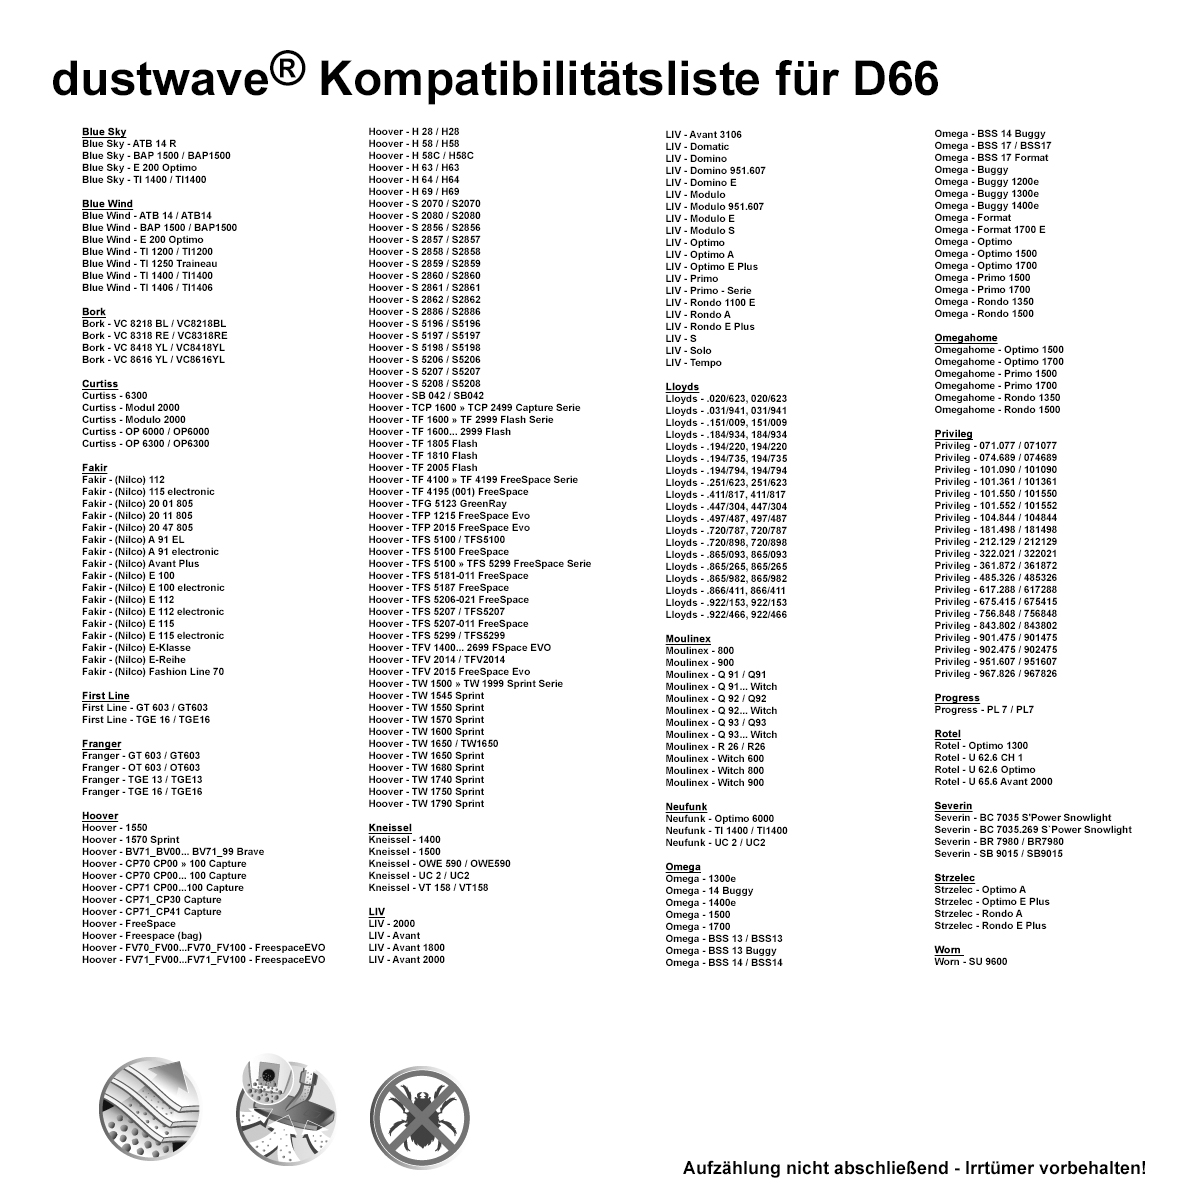 Dustwave® 10 Staubsaugerbeutel für Hoover TW1780 - hocheffizient, mehrlagiges Mikrovlies mit Hygieneverschluss - Made in Germany